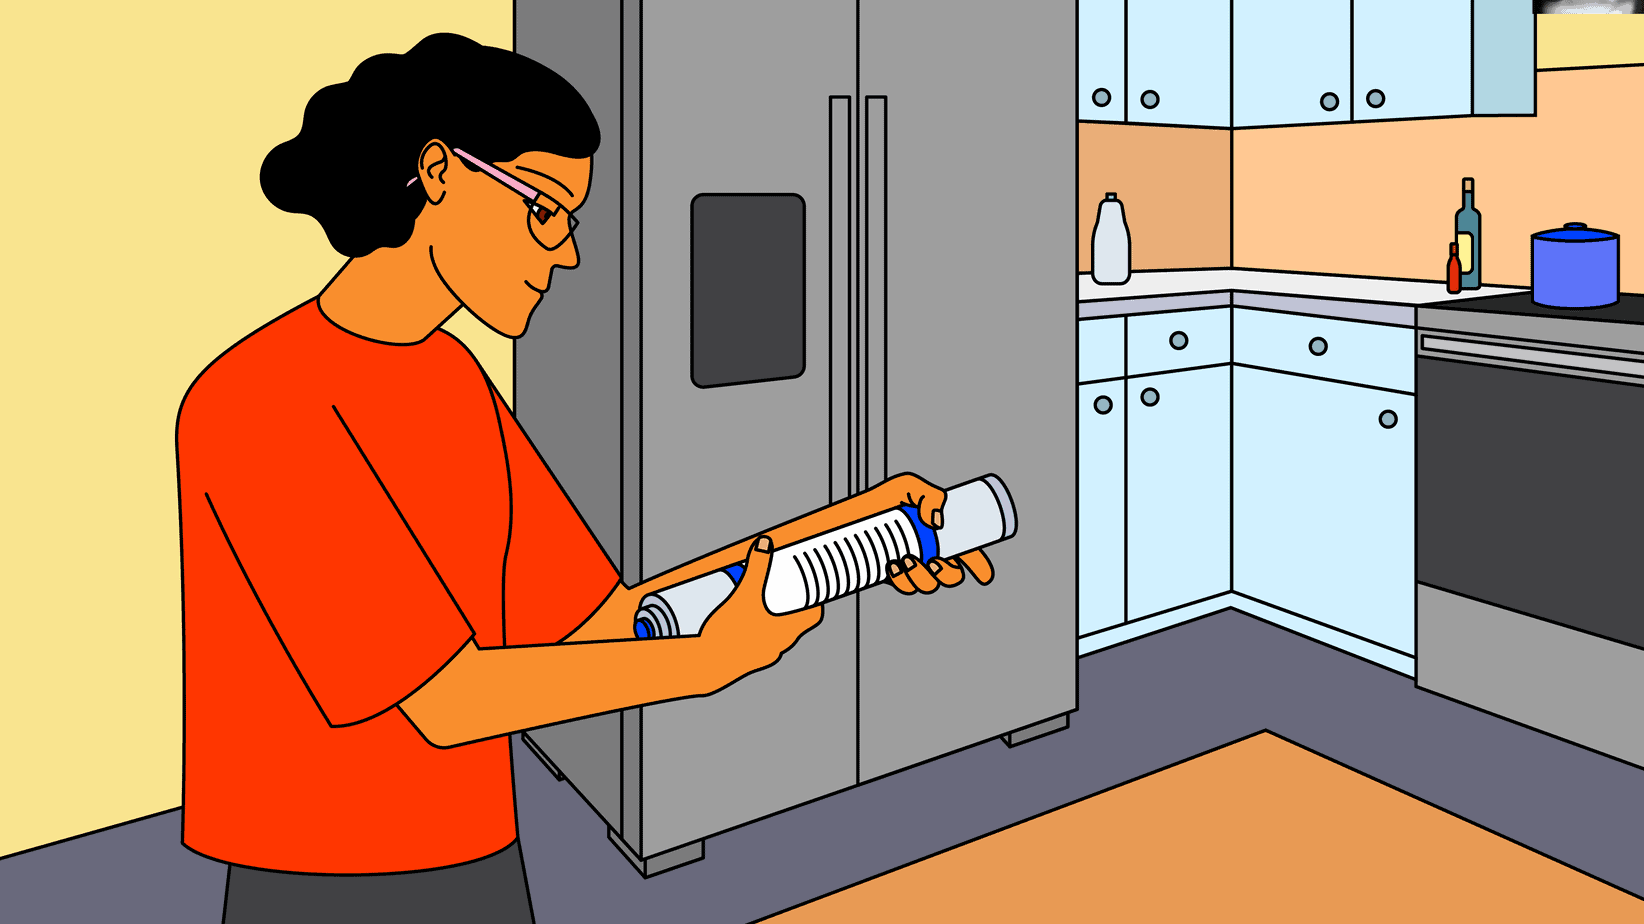 Comment remplacer le filtre à eau externe sur un réfrigérateur